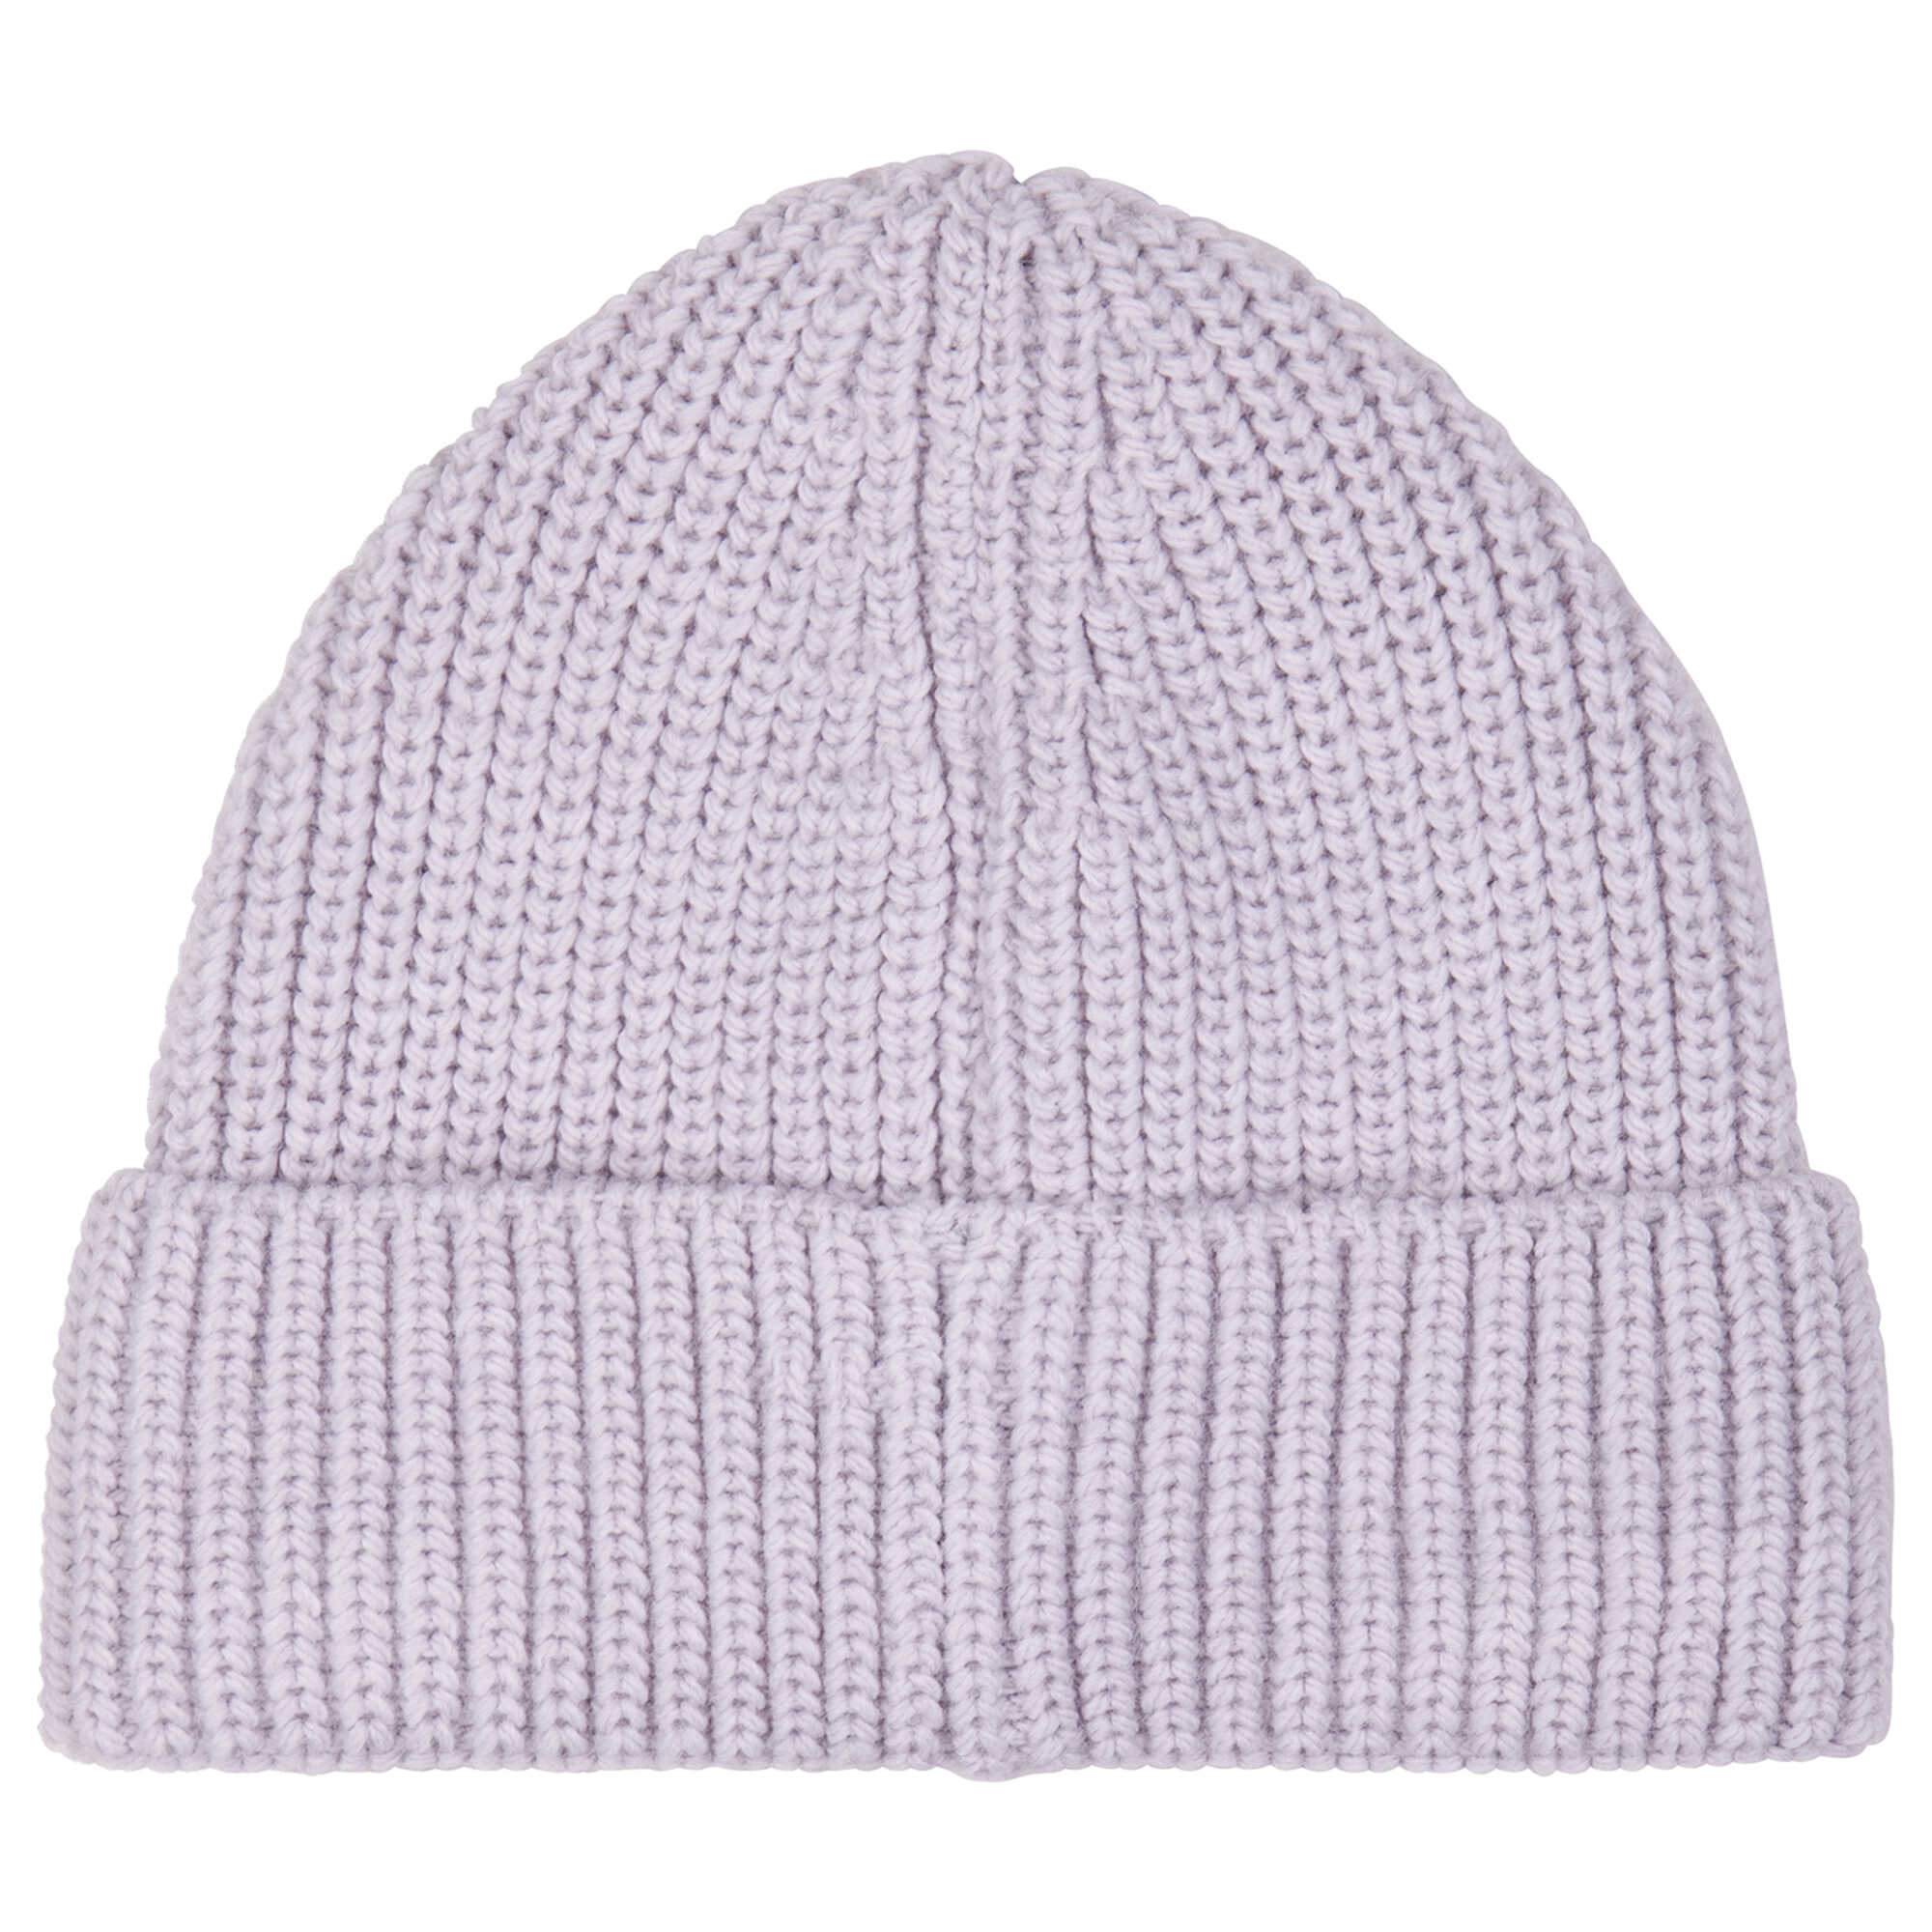 Boys & Girls Light Purple Wool Knit Hat